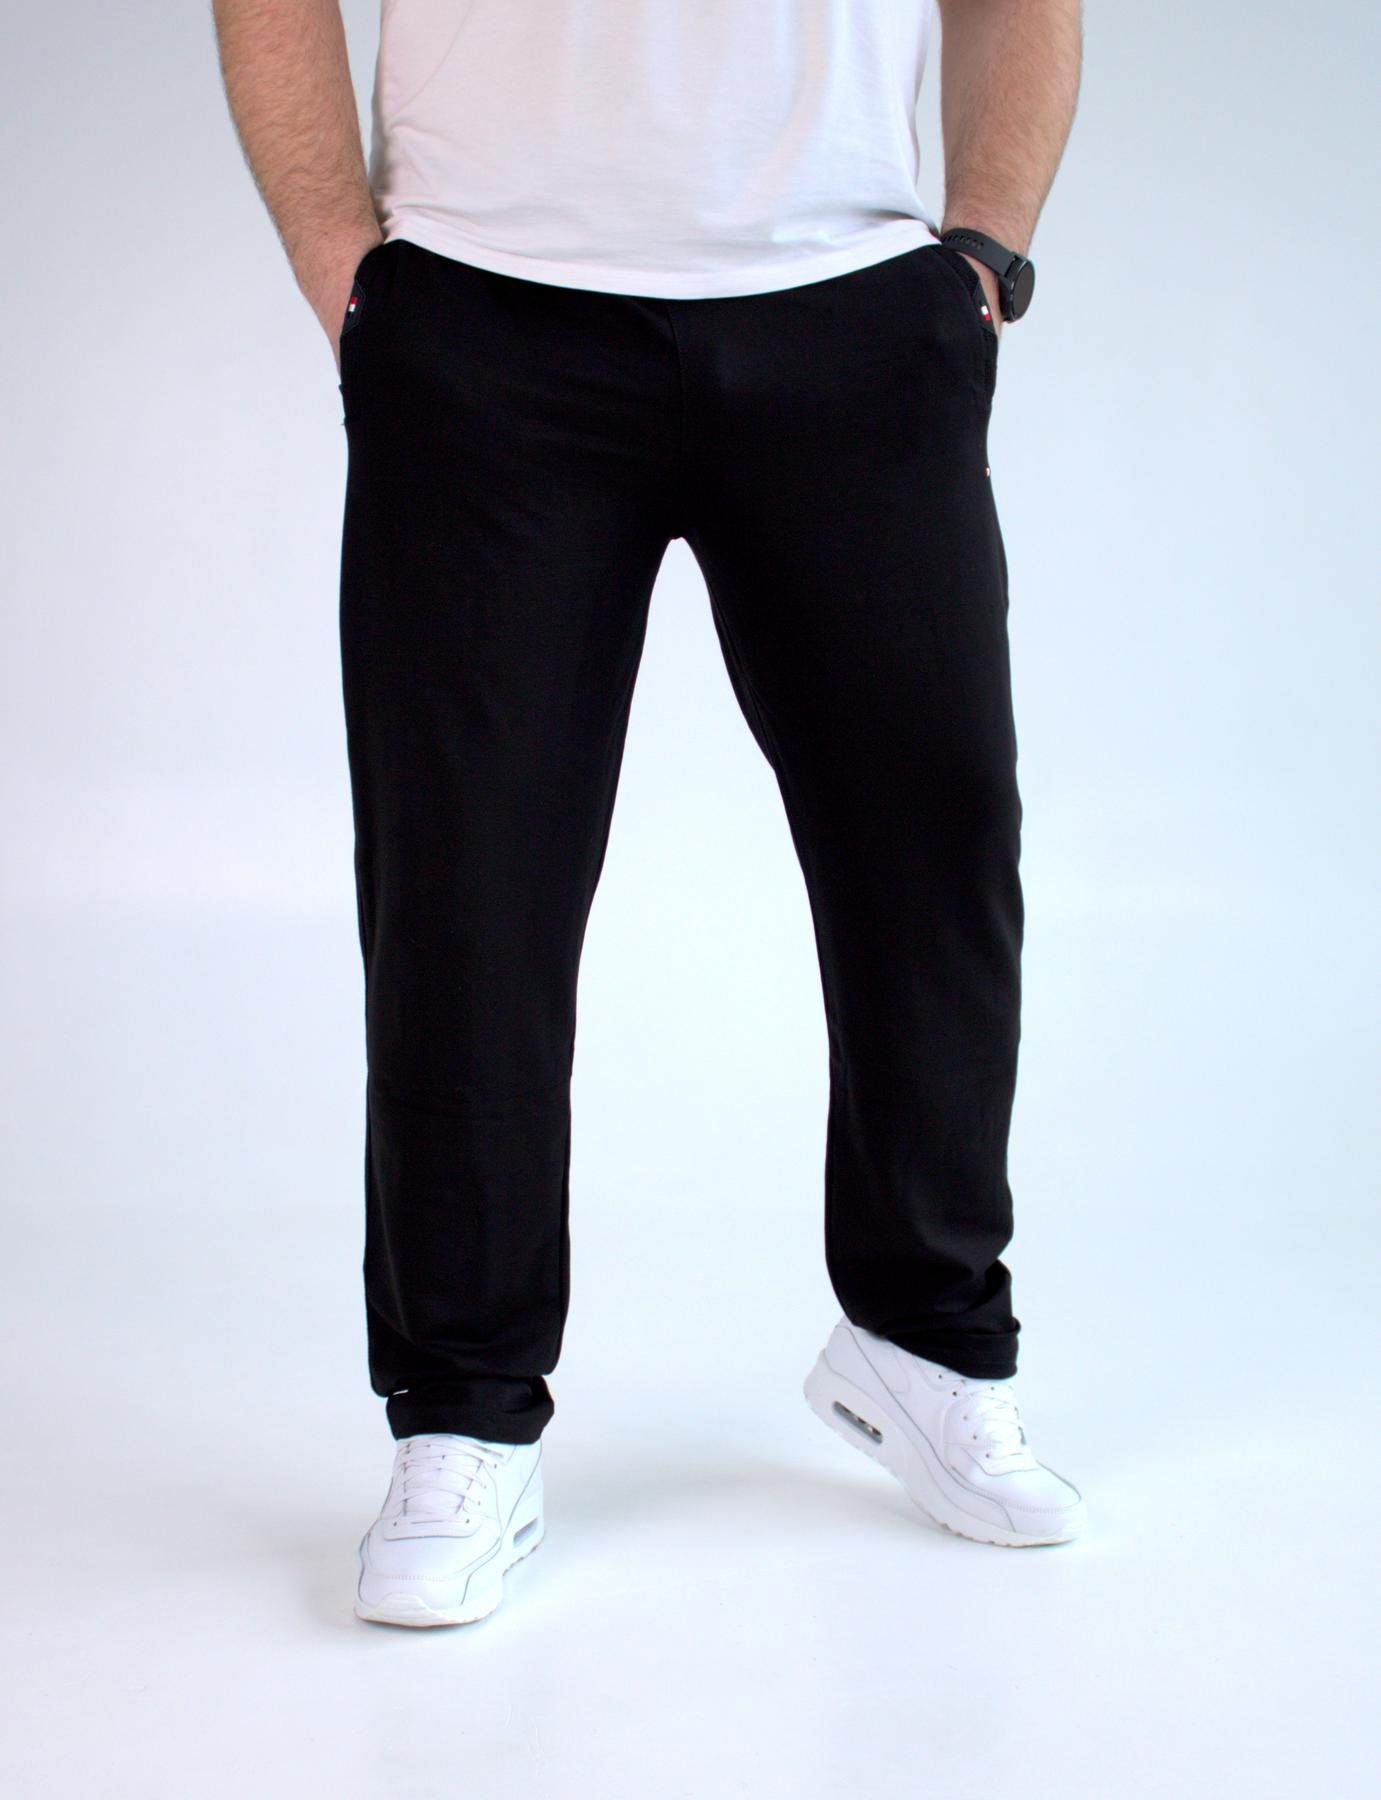 Tommy Hilfiger БАТАЛ штаны спортивные мужские чёрные большие 3XL-6XL